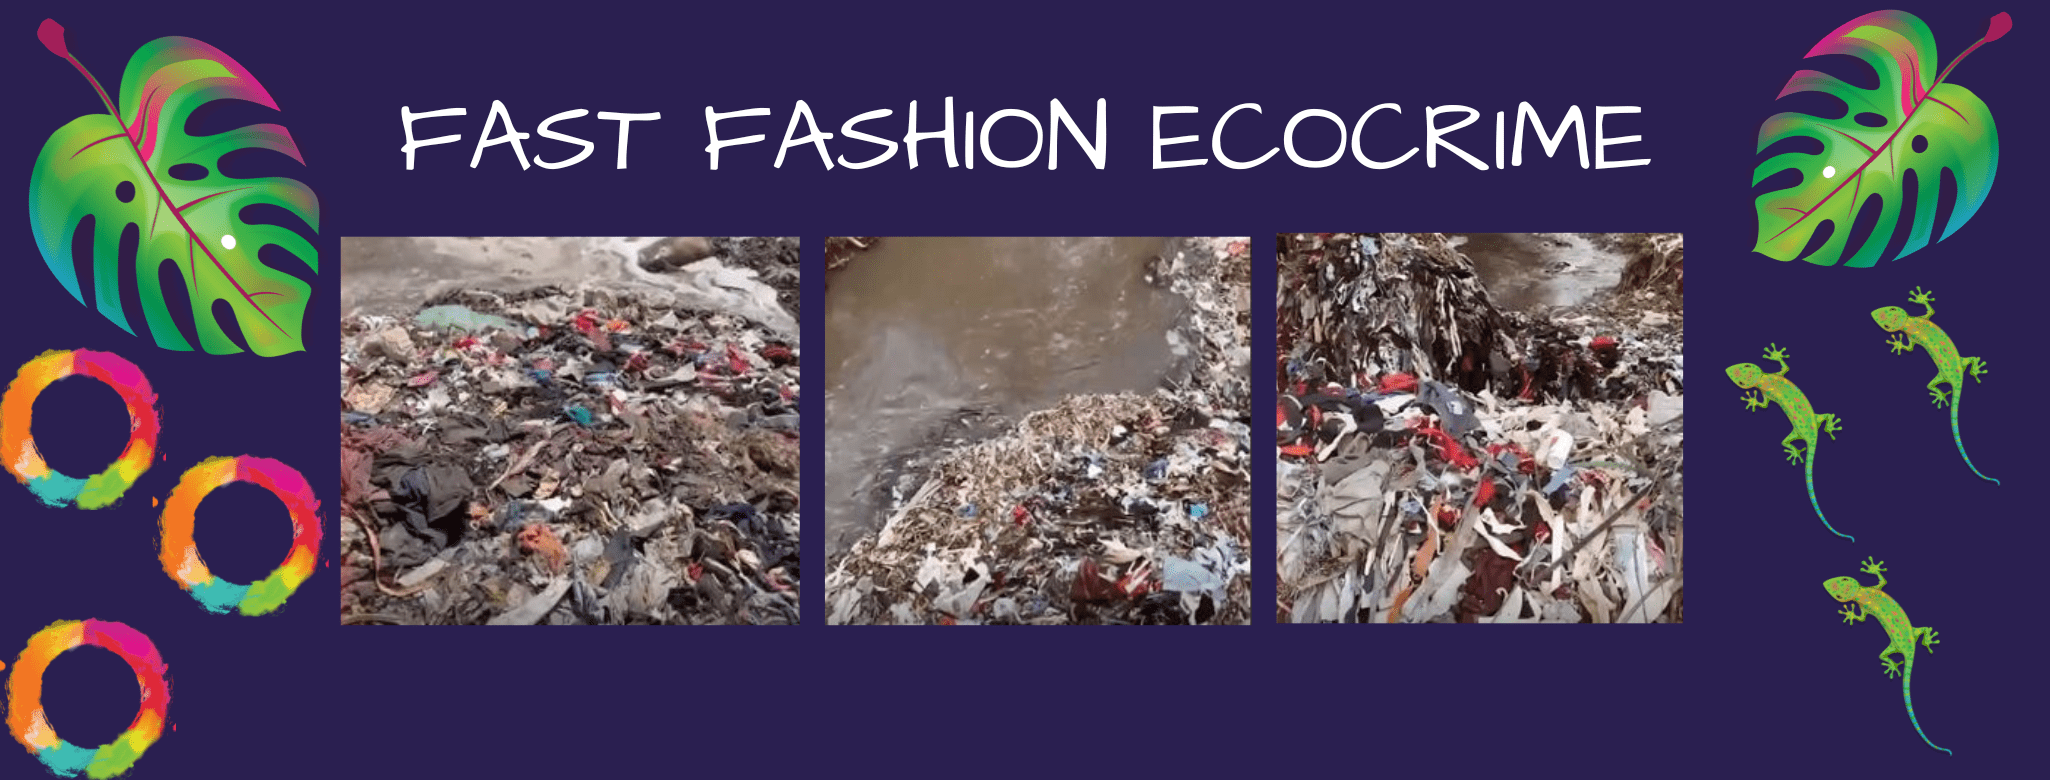 Fast Fashion Eco-Crime